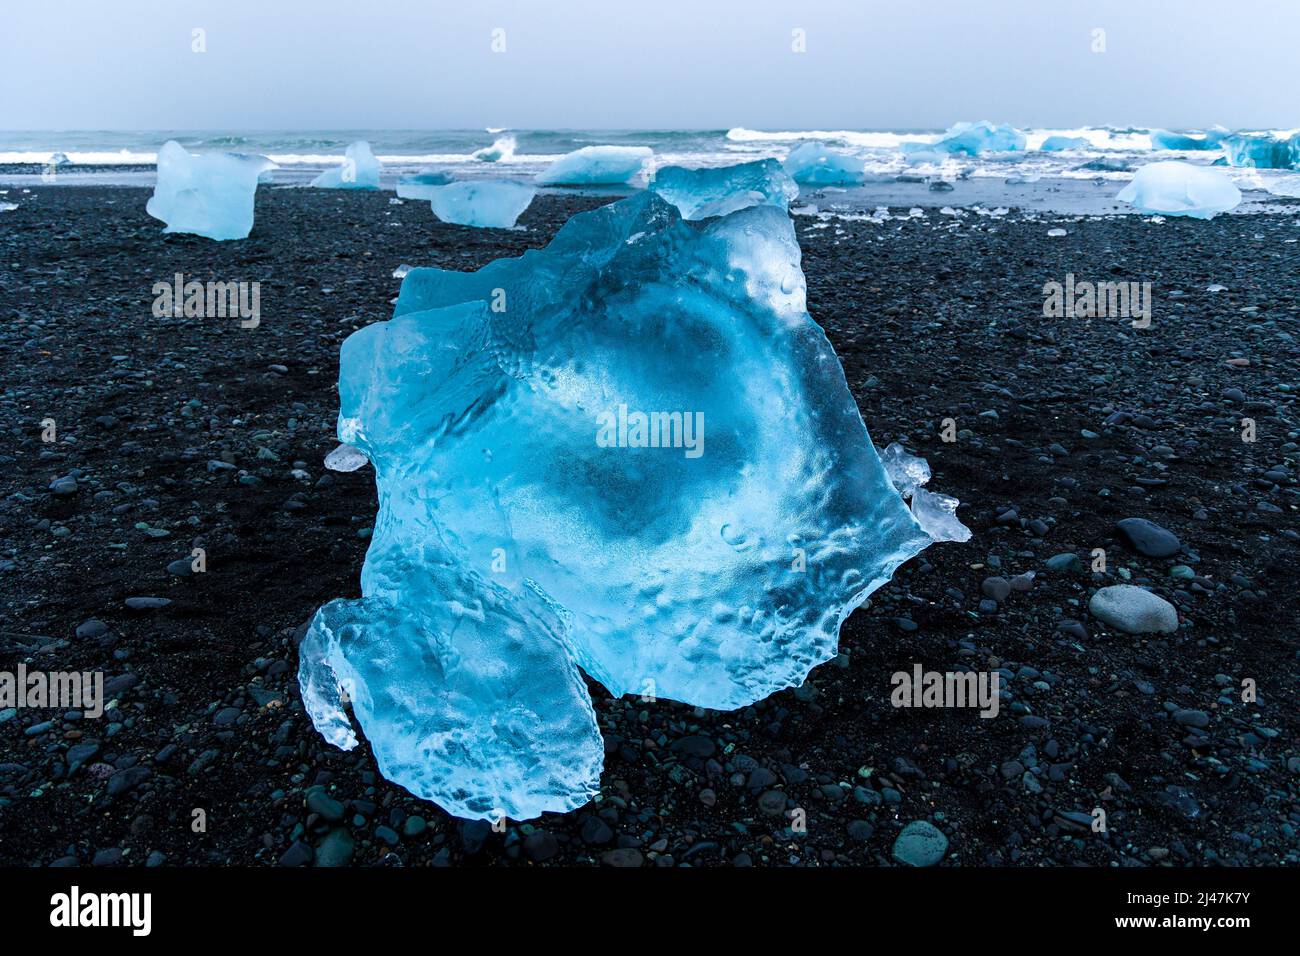 Morceaux de glace et icebergs cassés sur une plage de sable noir volcanique au crépuscule (Diamond Beach, Islande) Banque D'Images